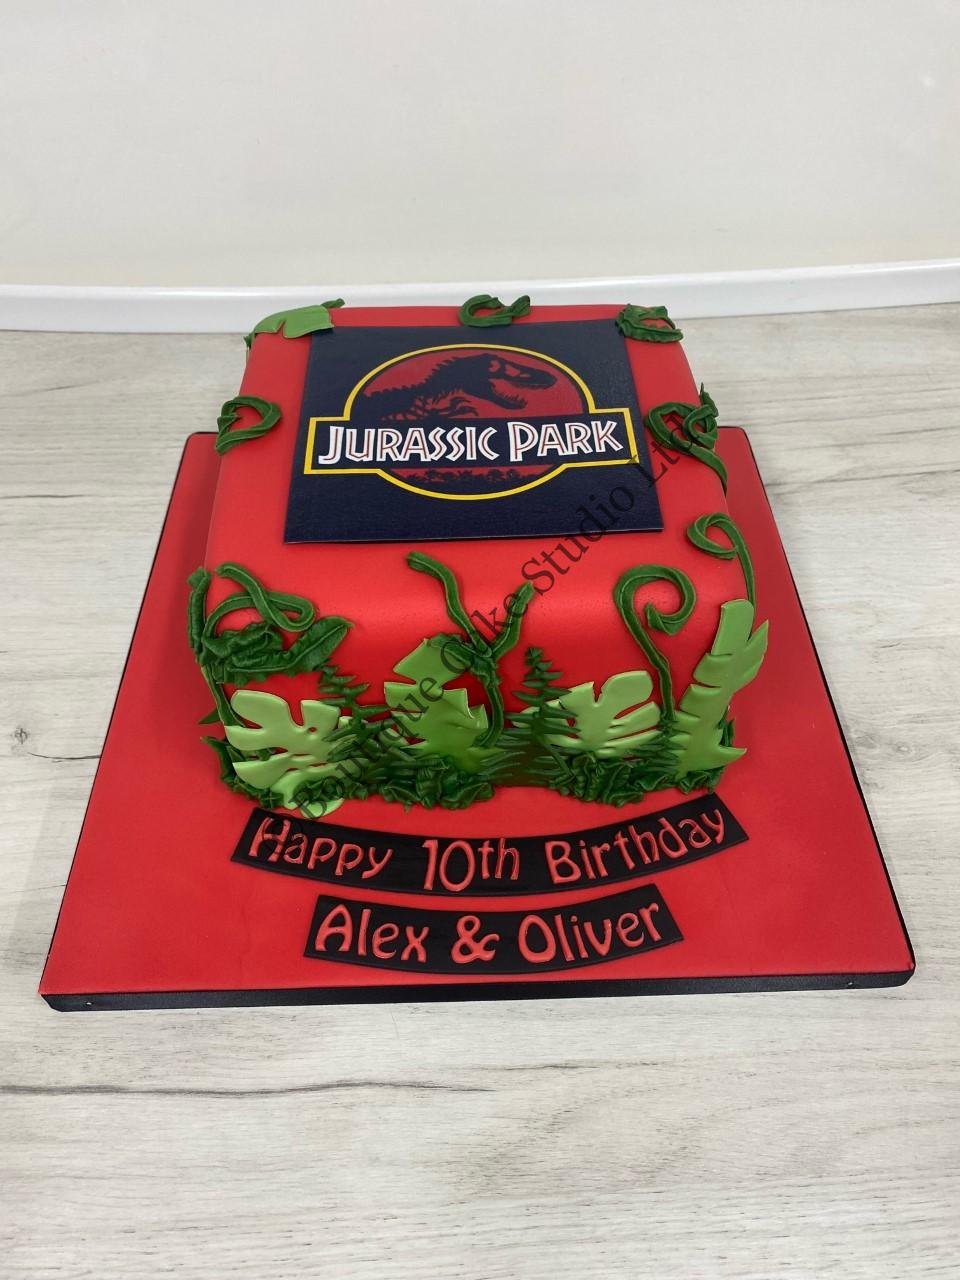 Jurassic Park themed Cake